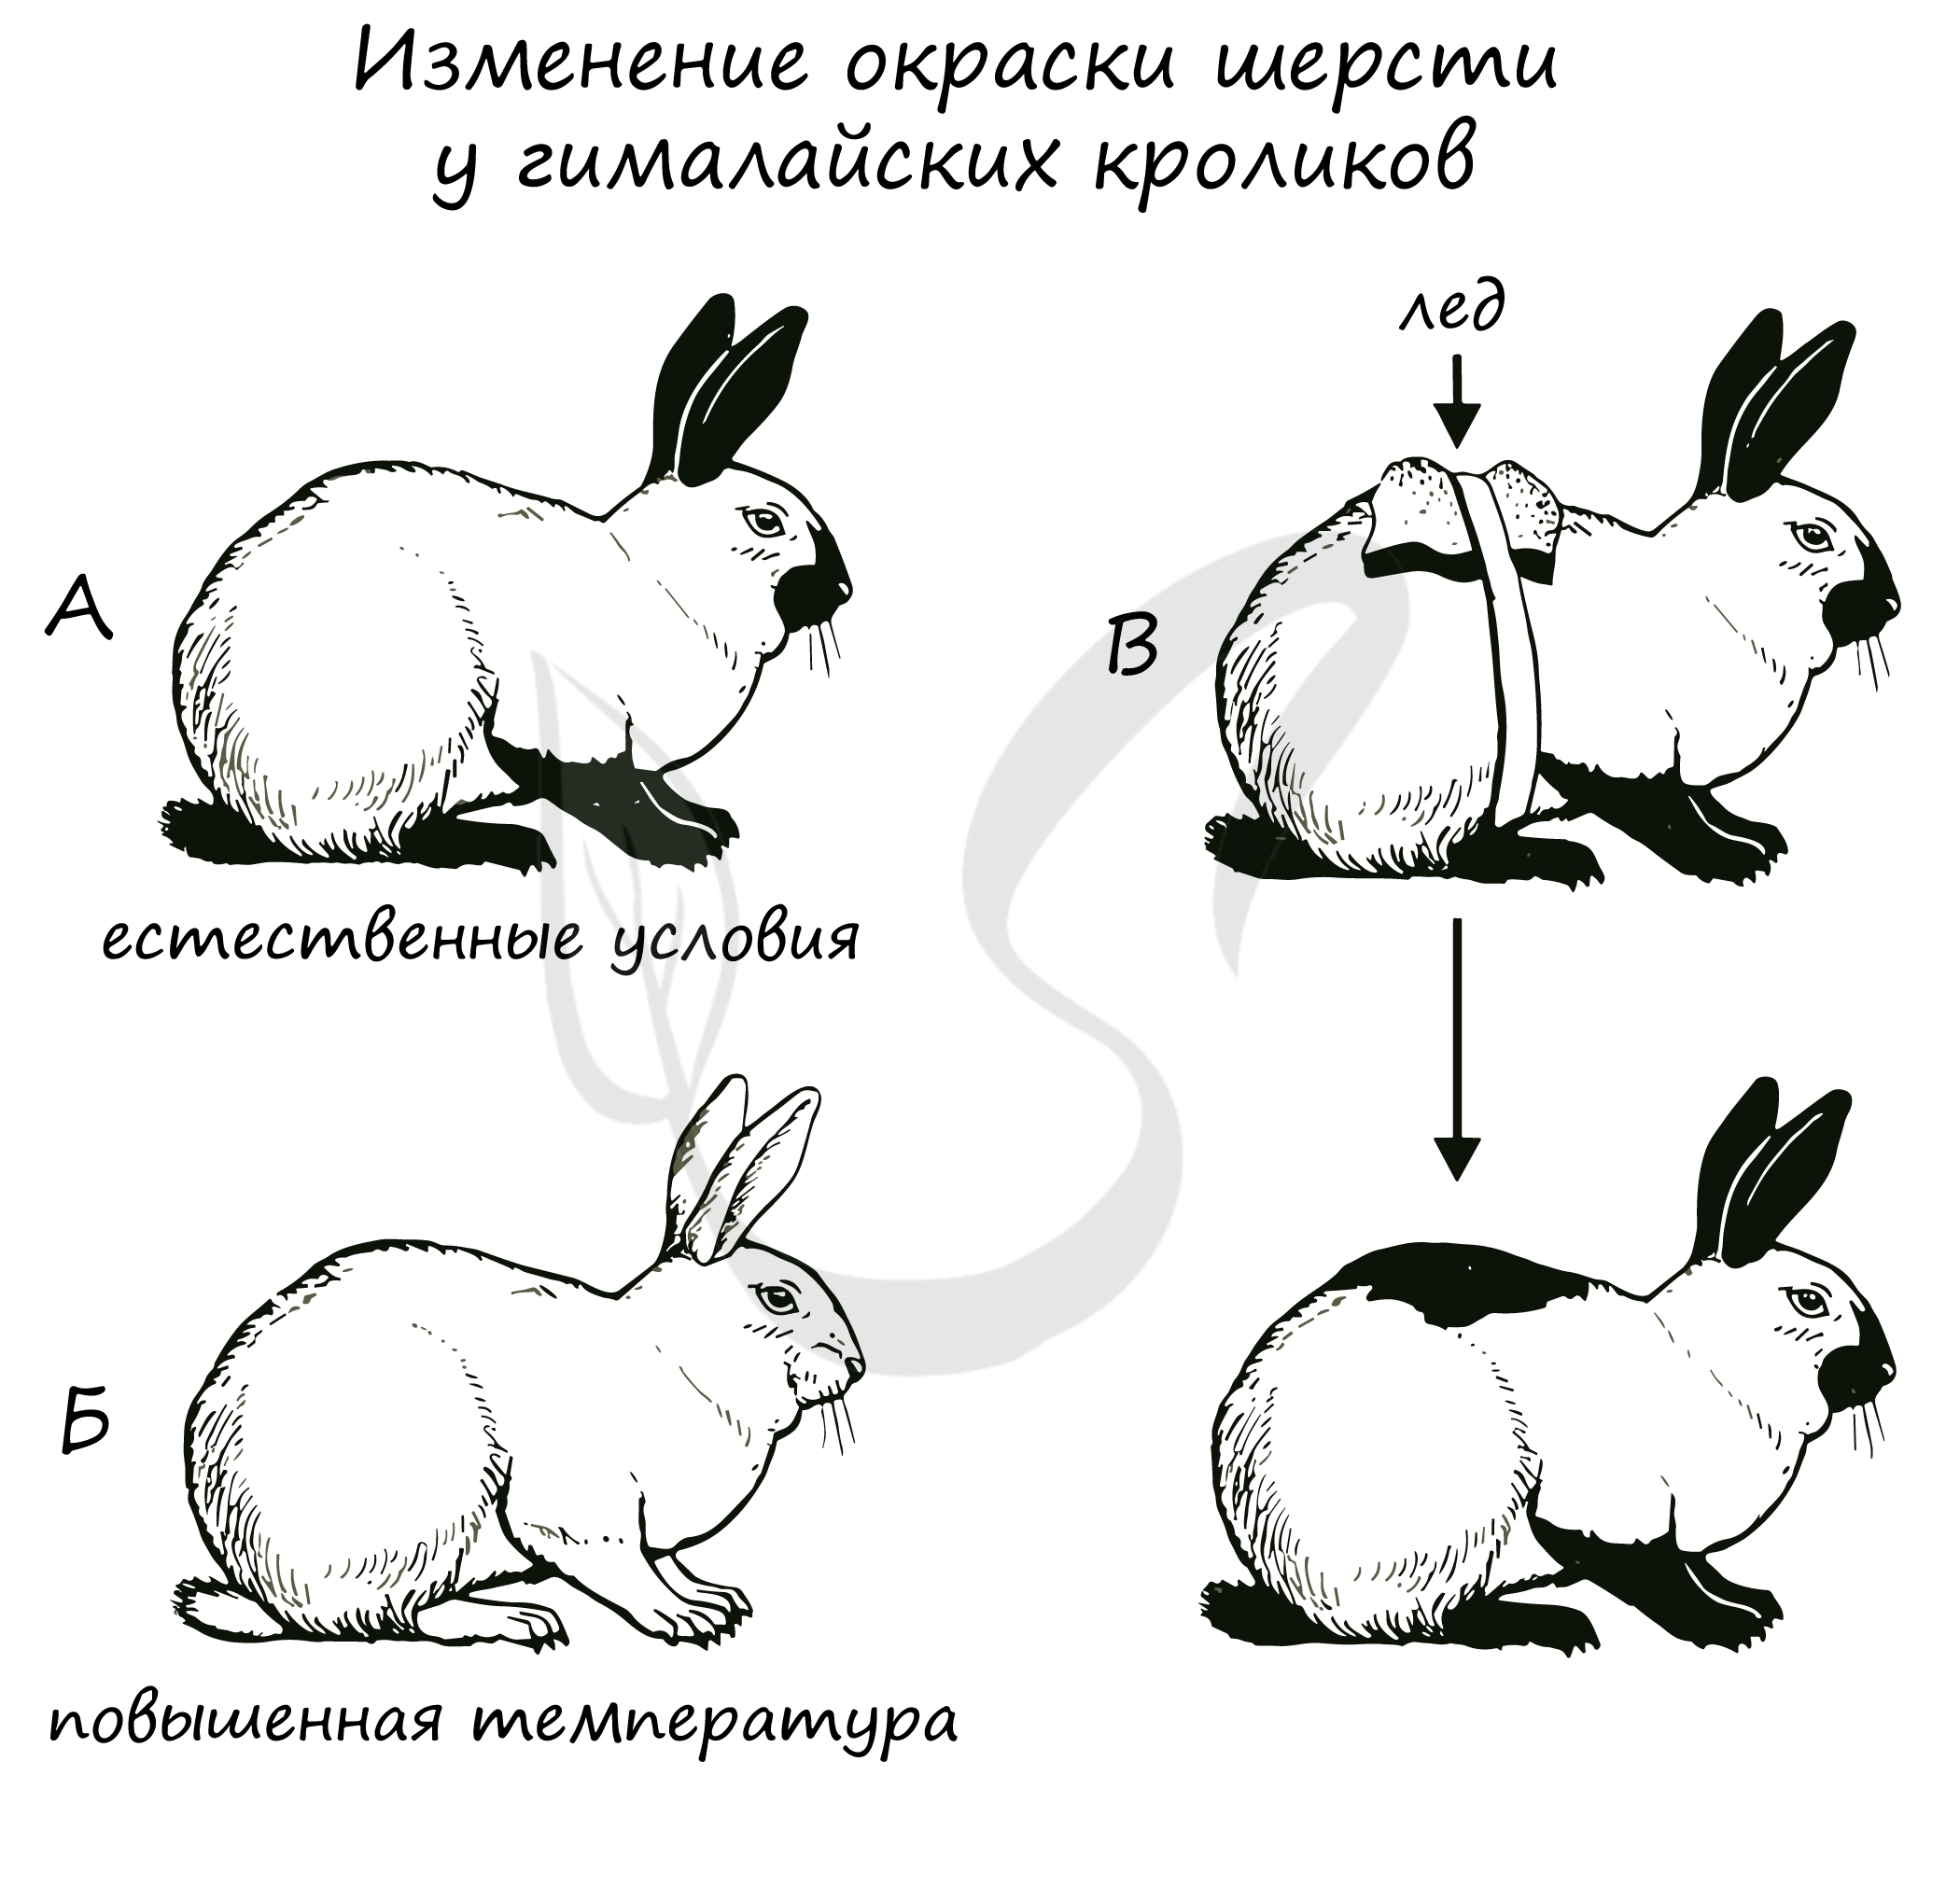 Шерсть гималайских кроликов. Гималайский кролик модификационная изменчивость. Изменение окраски гималайского кролика. Гималайский кролик опыт. Горностаевый кролик изменчивость.